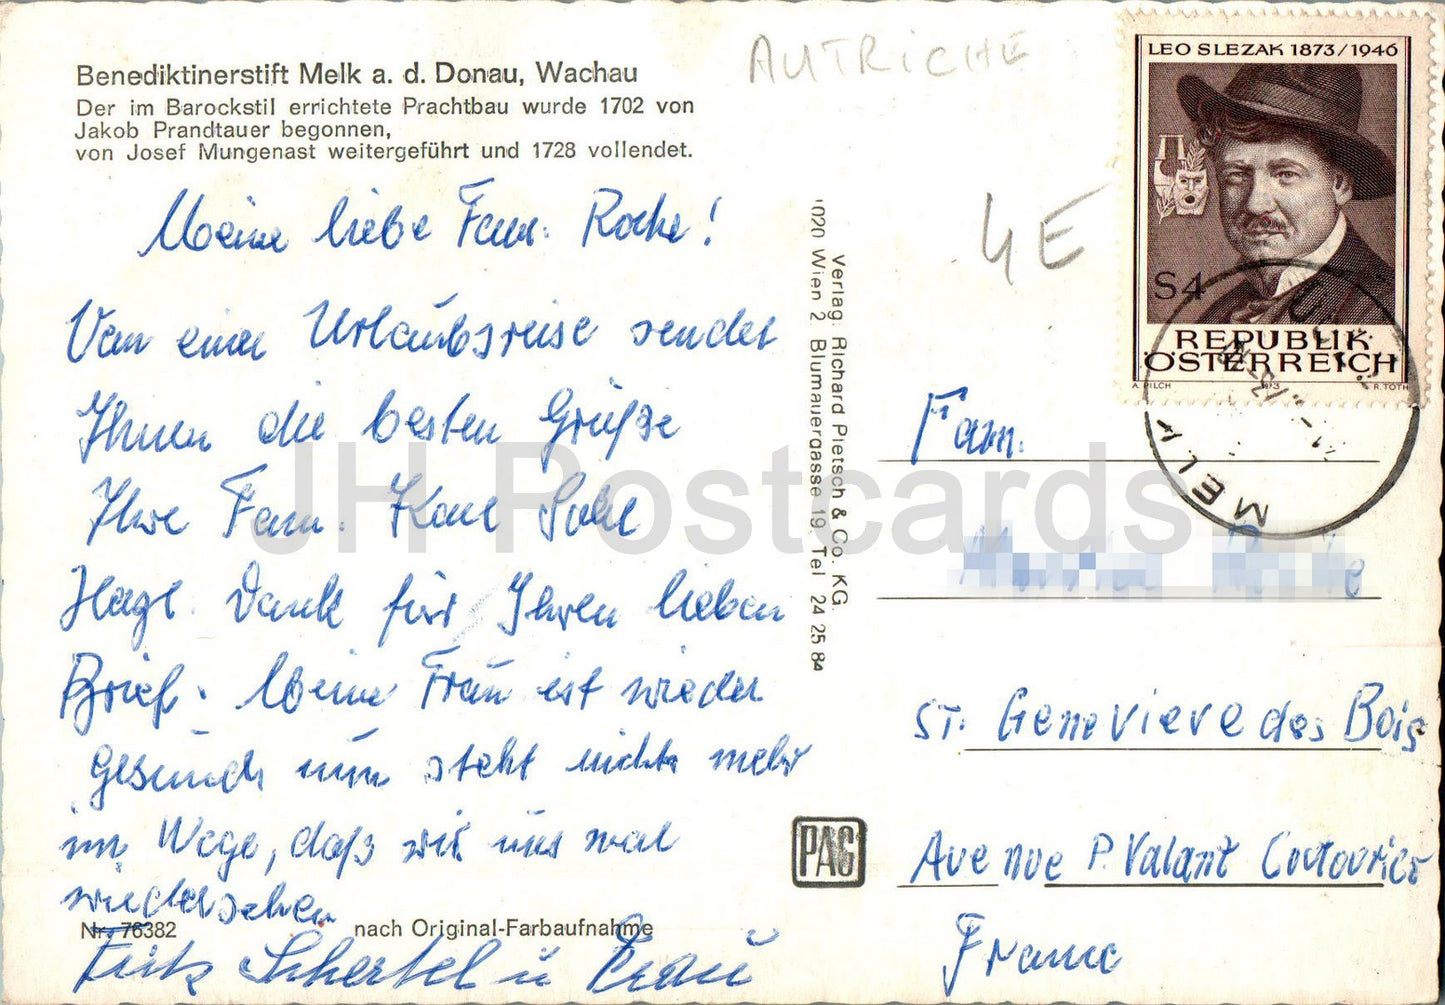 Benediktinerstift Melk ad Donau - Wachau - 76382 - Österreich - gebraucht 